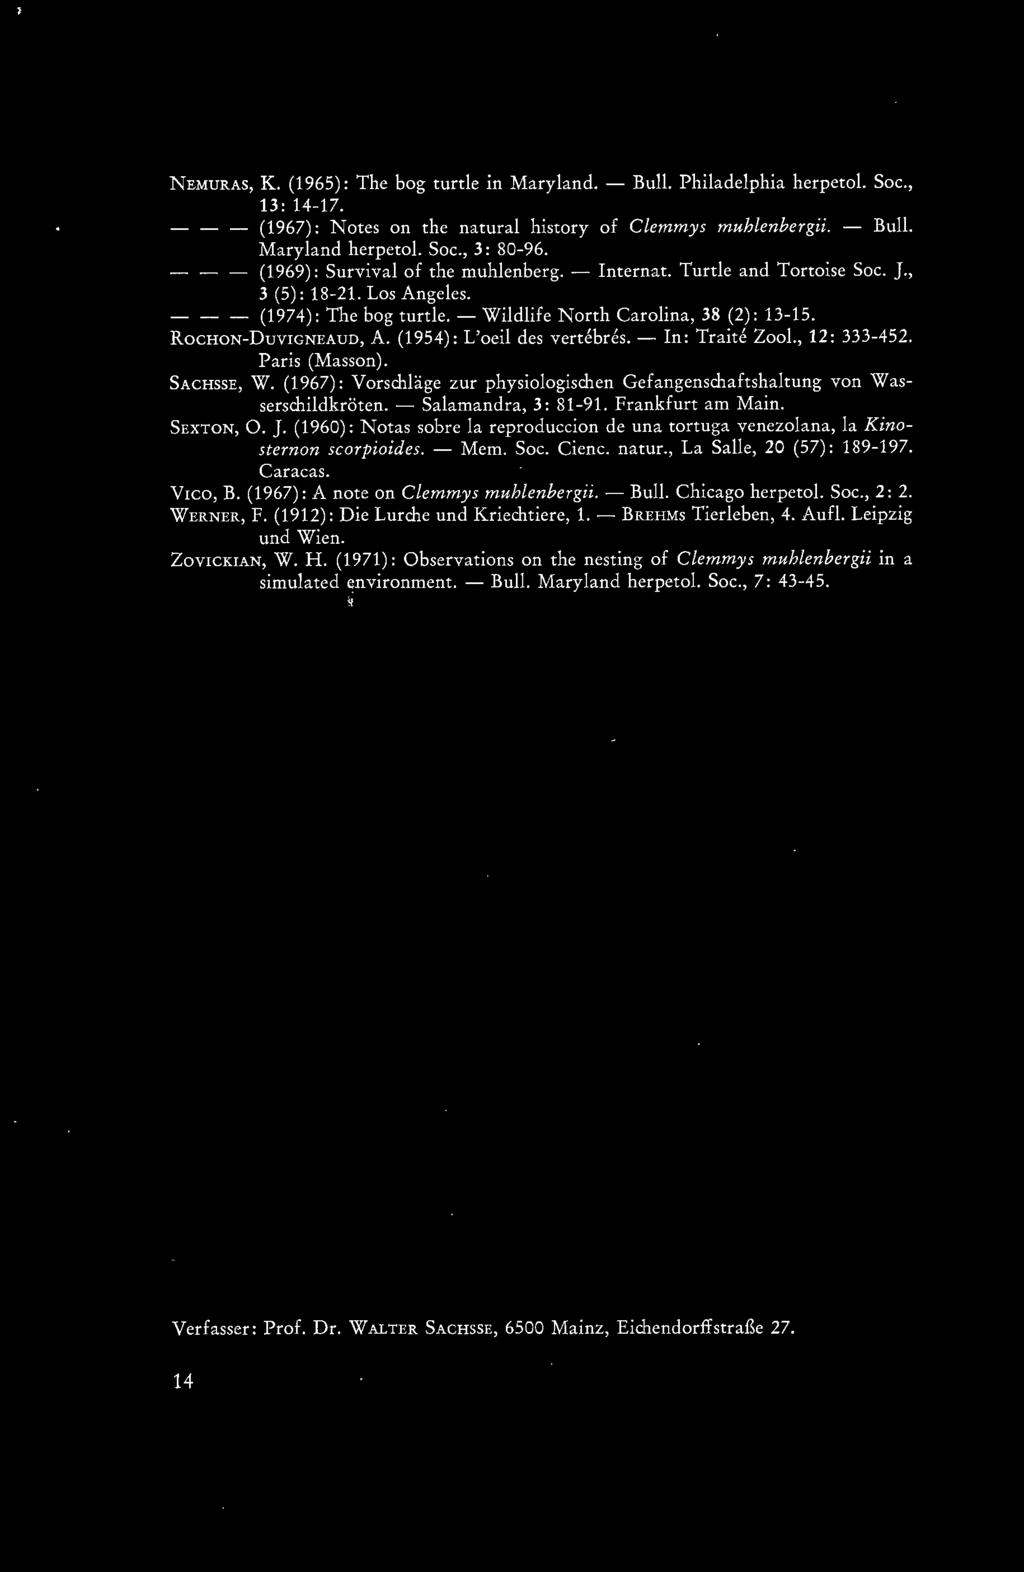 (1954): L'oeil des vertebres. - In: Traite Zoo!., 12: 333-452. Paris (Masson). SACHSSE, W. (1967): Vorschläge zur physiologischen Gefangenschaftshaltung von Wasserschildkröten. - Salamandra, 3: 81-91.